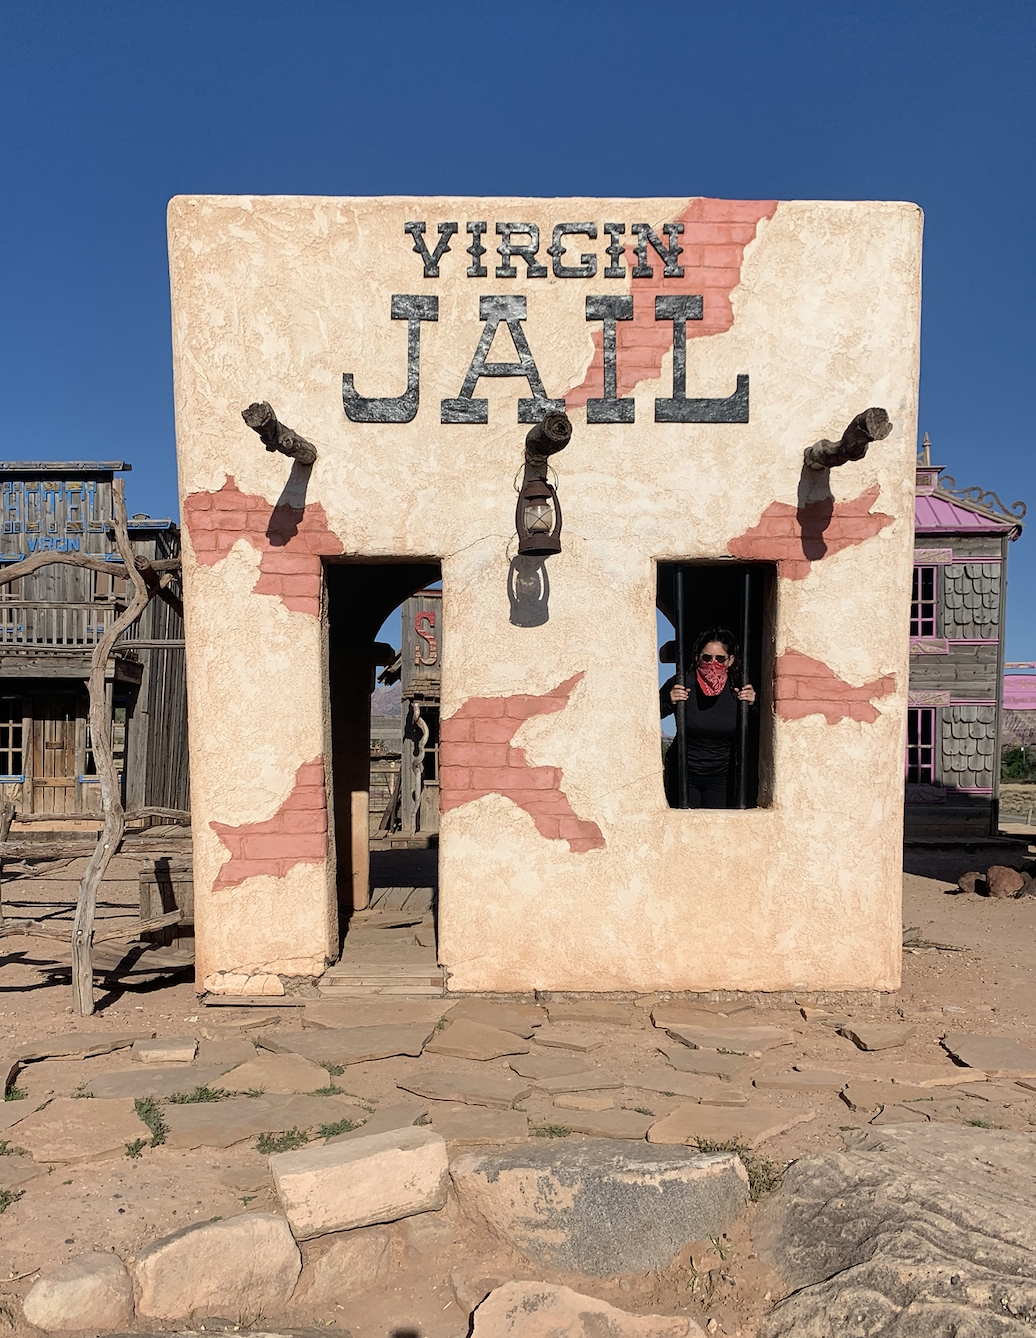 Virgin Jail in Virgin, Utah